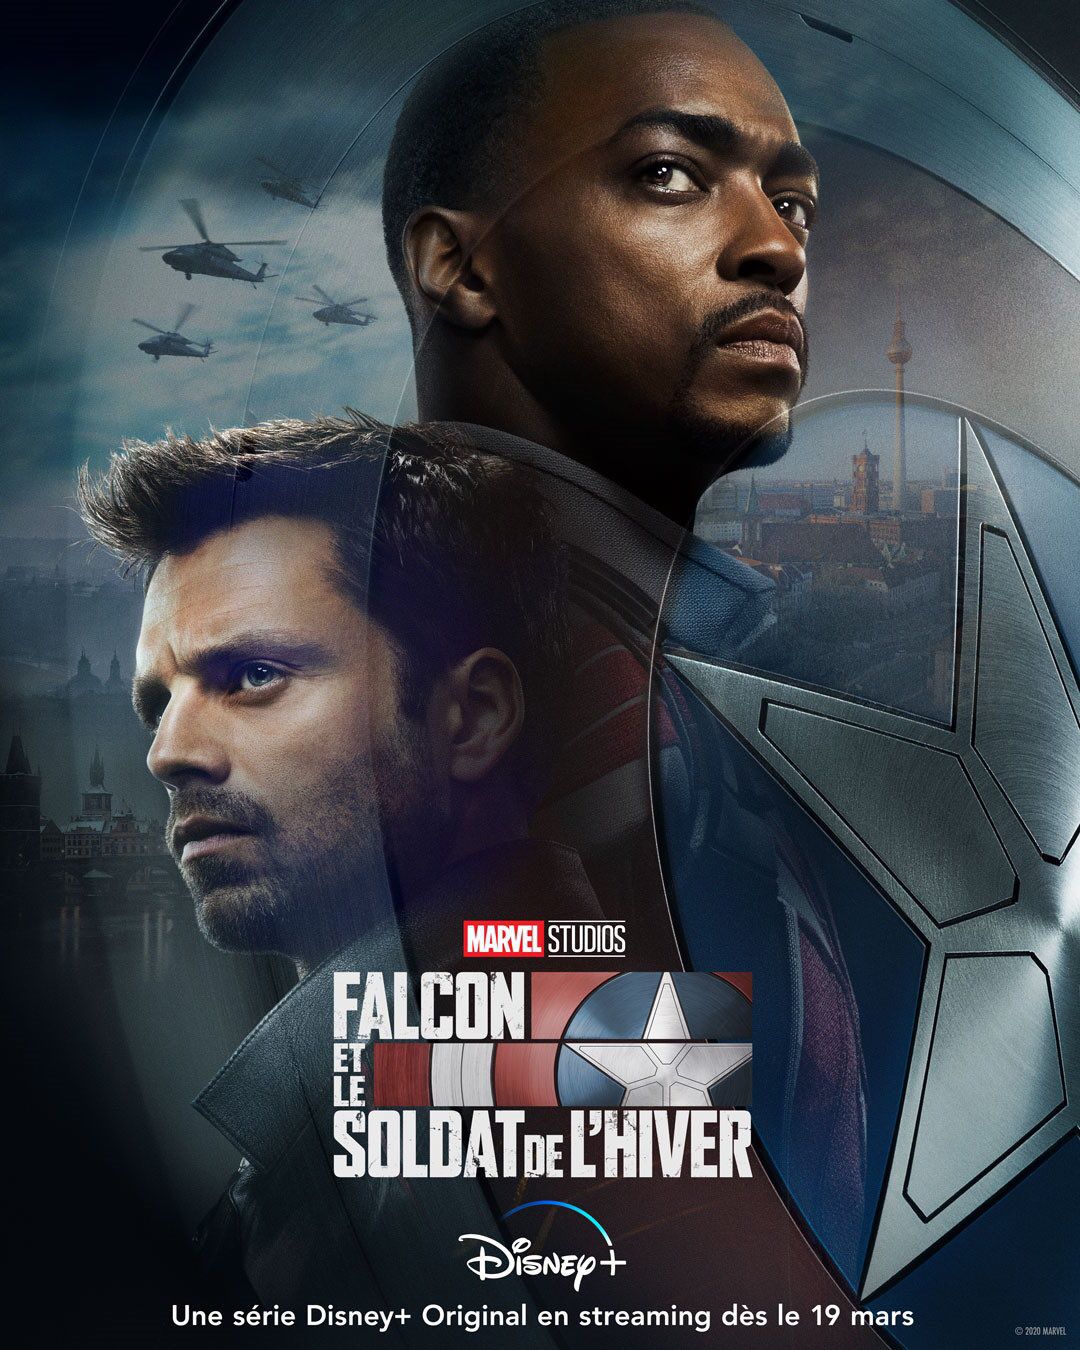 Falcon et le Soldat de l'hiver - Série (2021) streaming VF gratuit complet